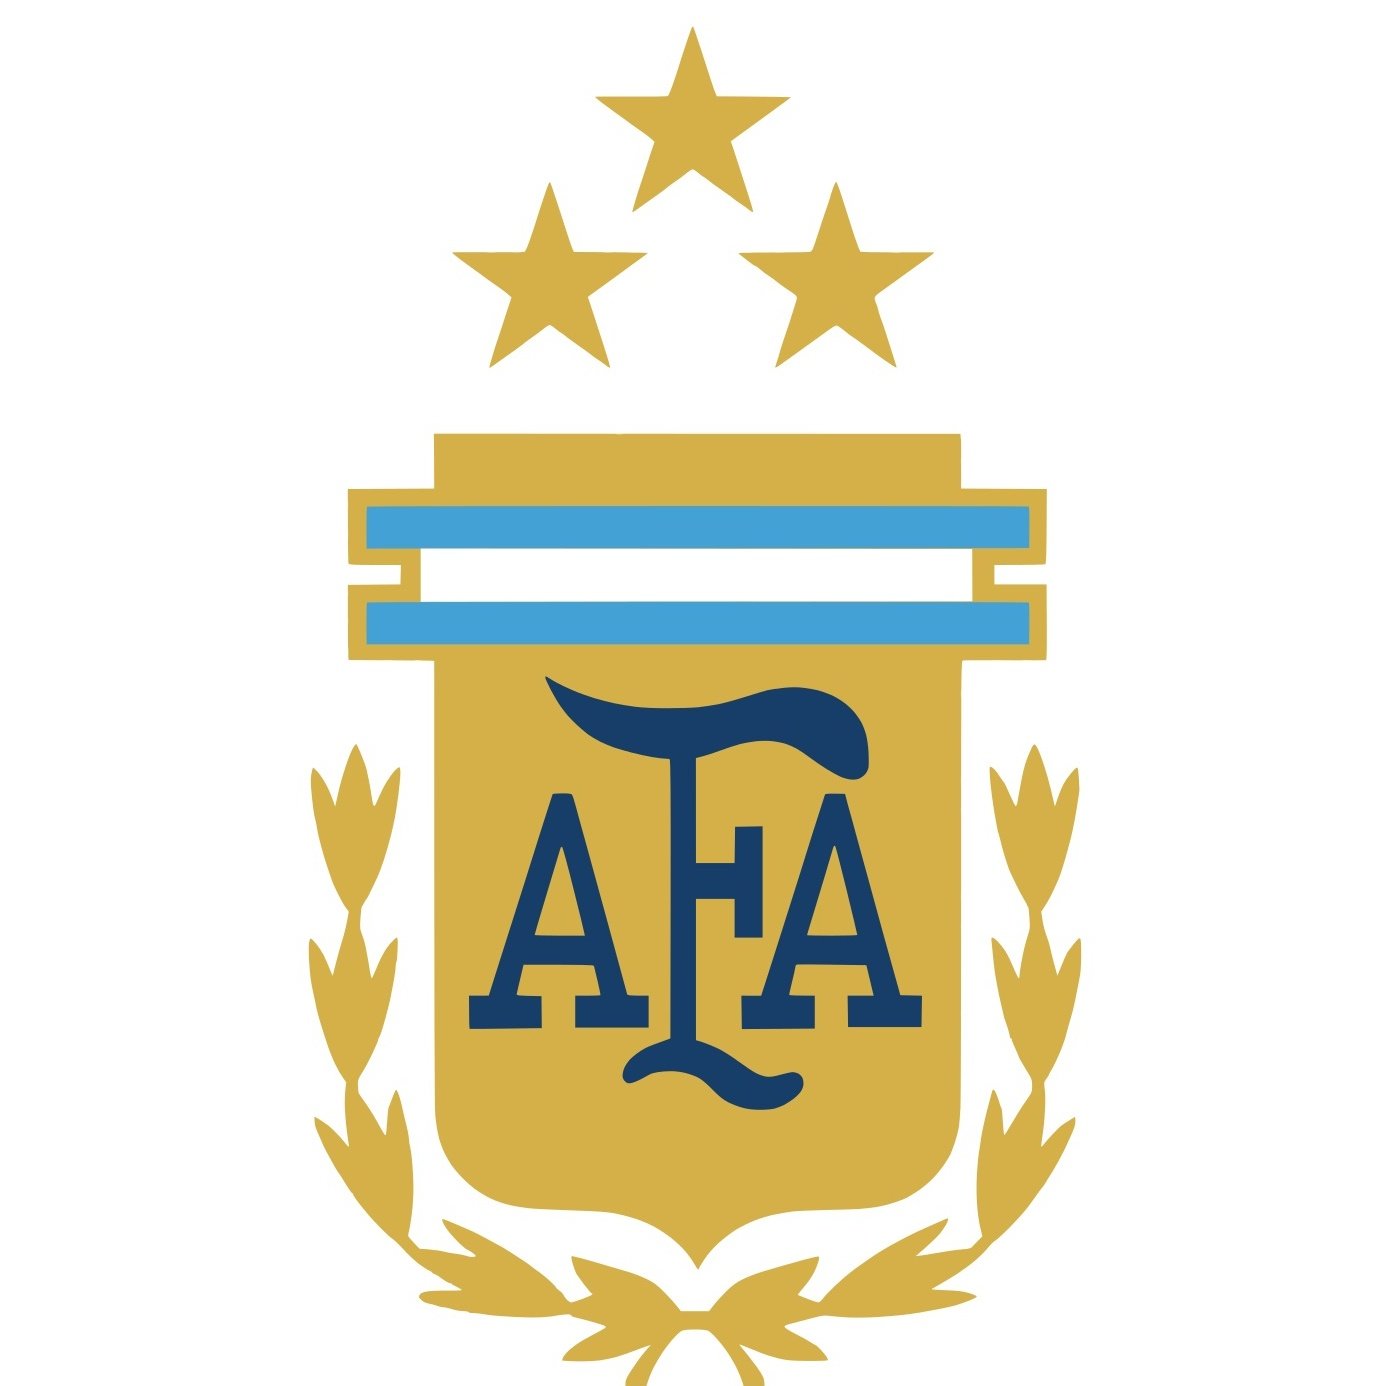 Escudo del Argentina Sub 17